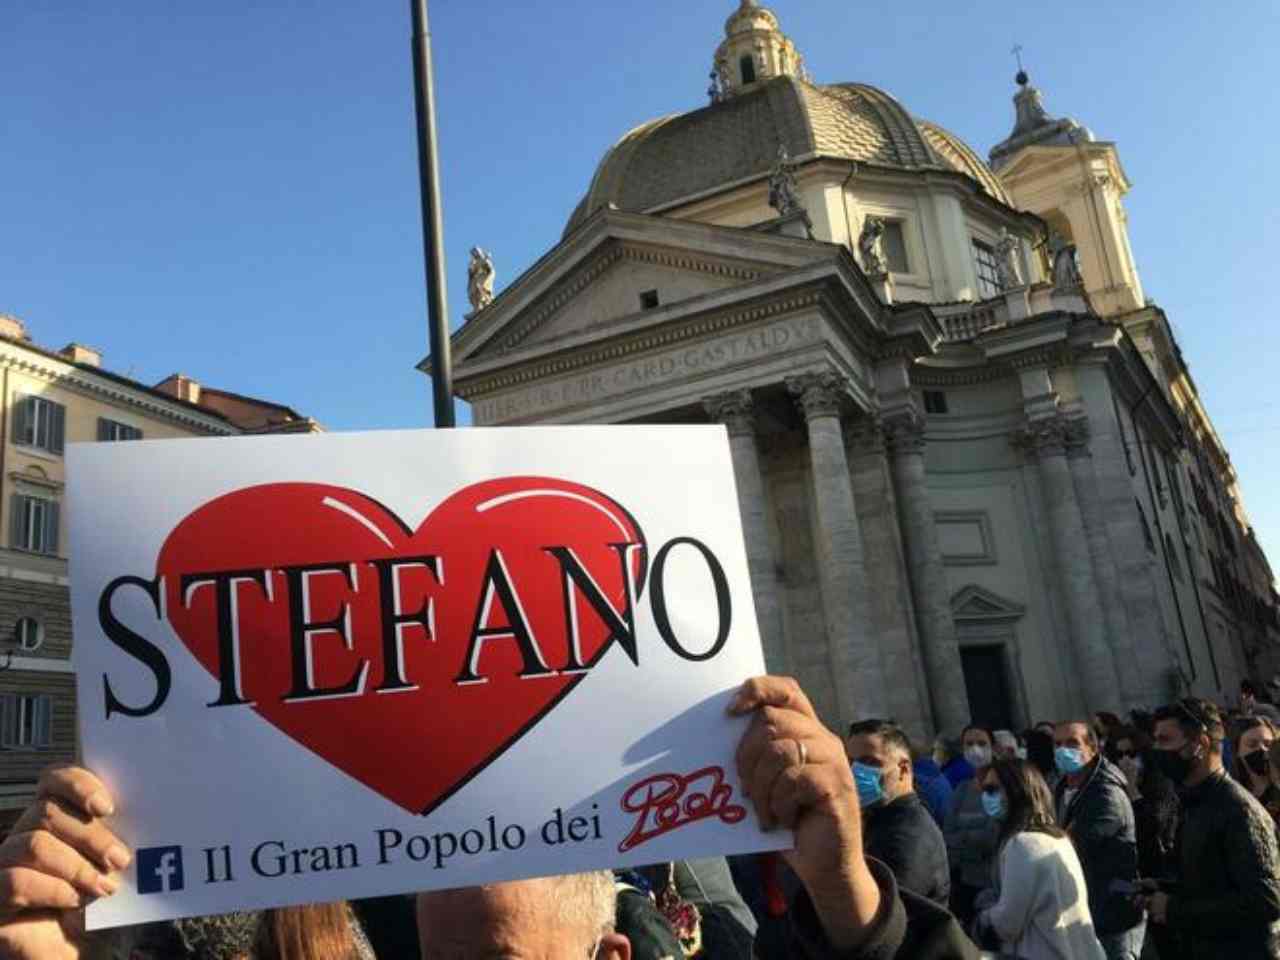 Funerali Stefano D'Orazio, centinaia di fan inondano Roma - VIDEO